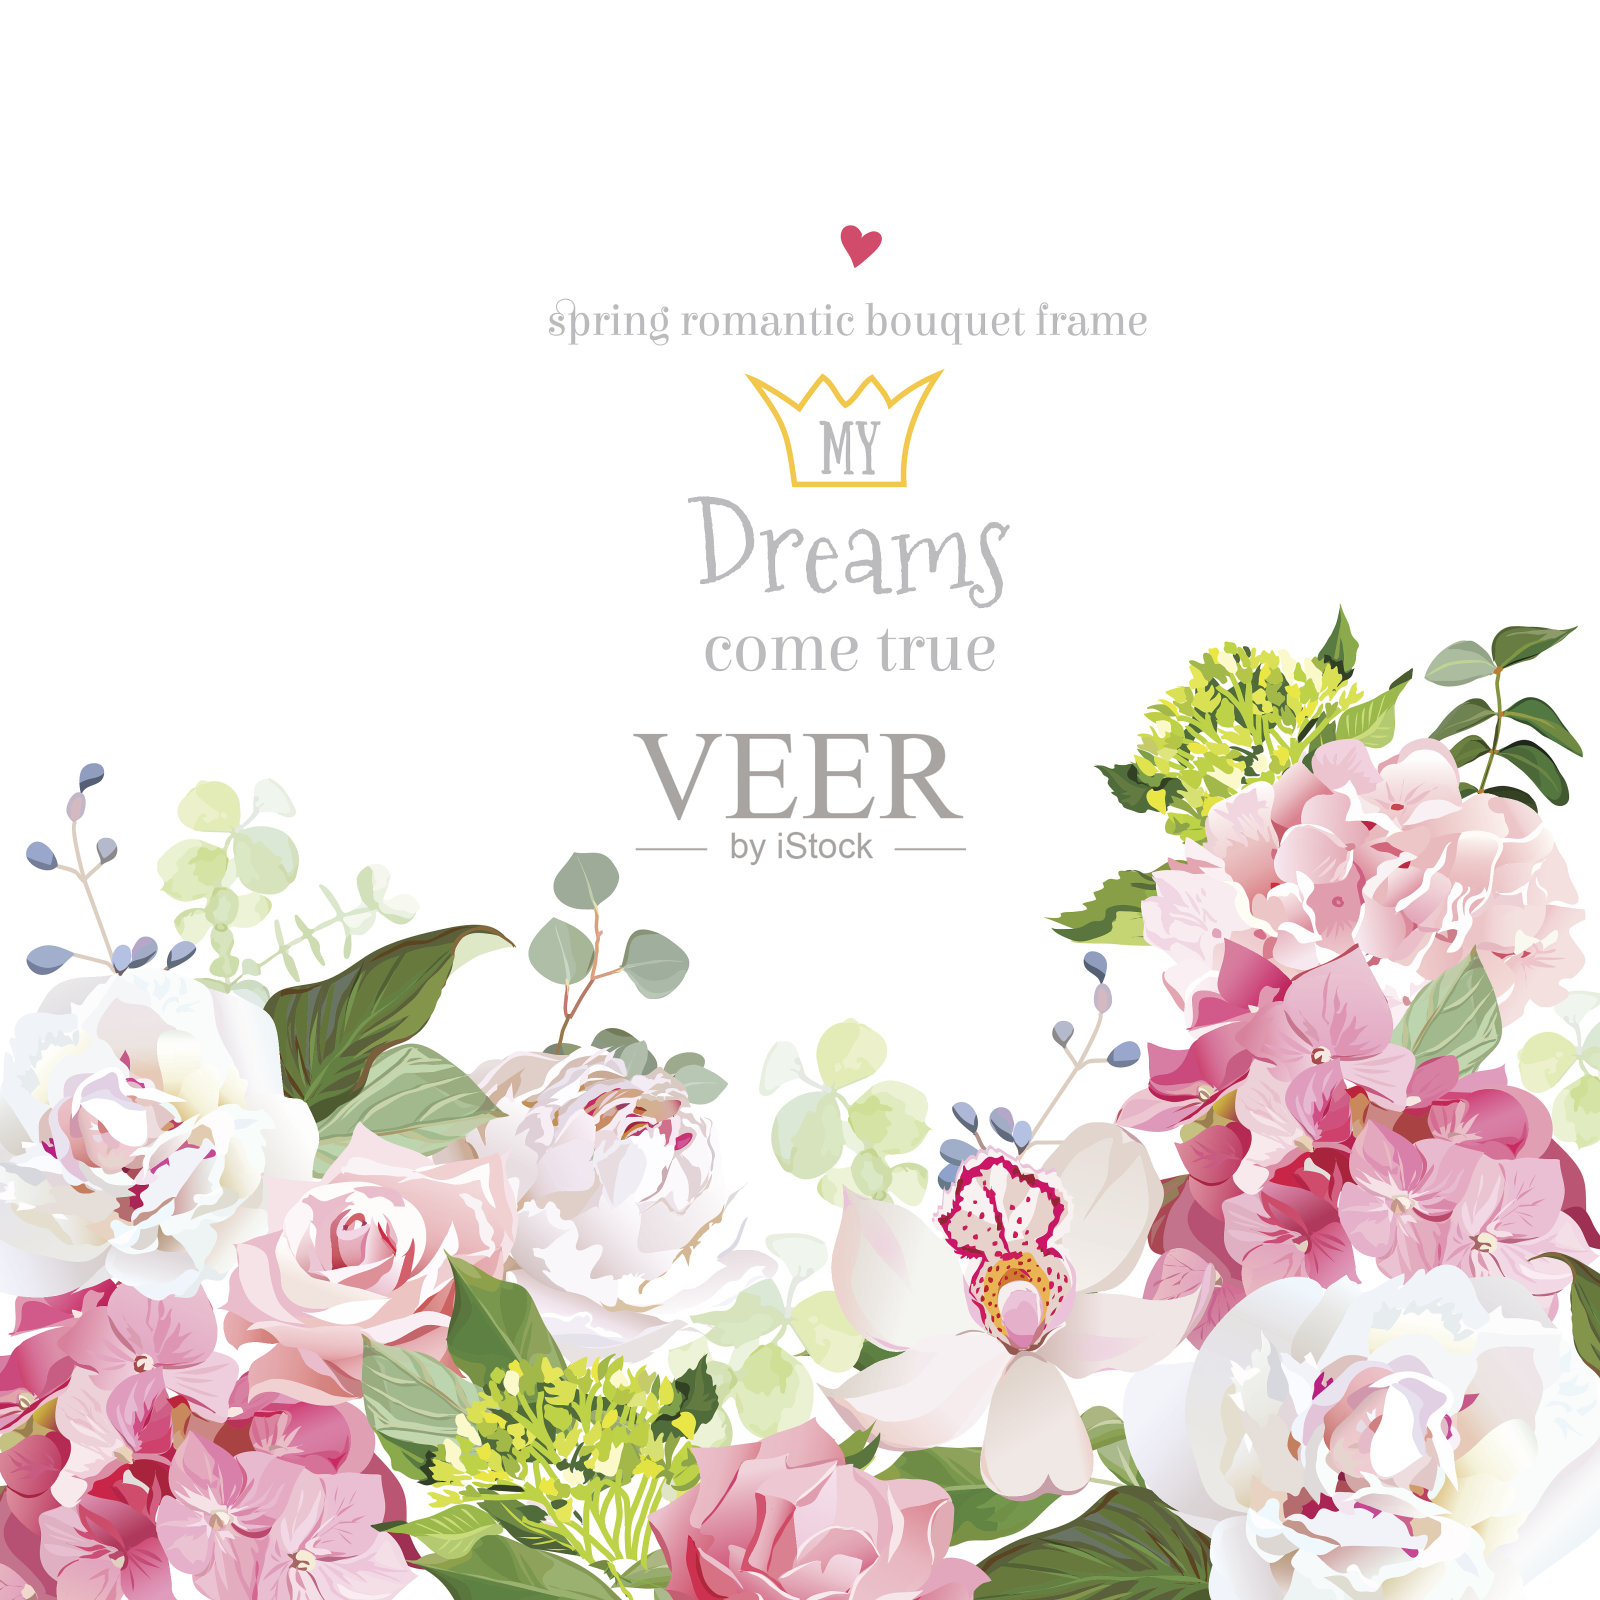 粉色绣球、玫瑰、牡丹、兰花、康乃馨矢量设计卡片。插画图片素材